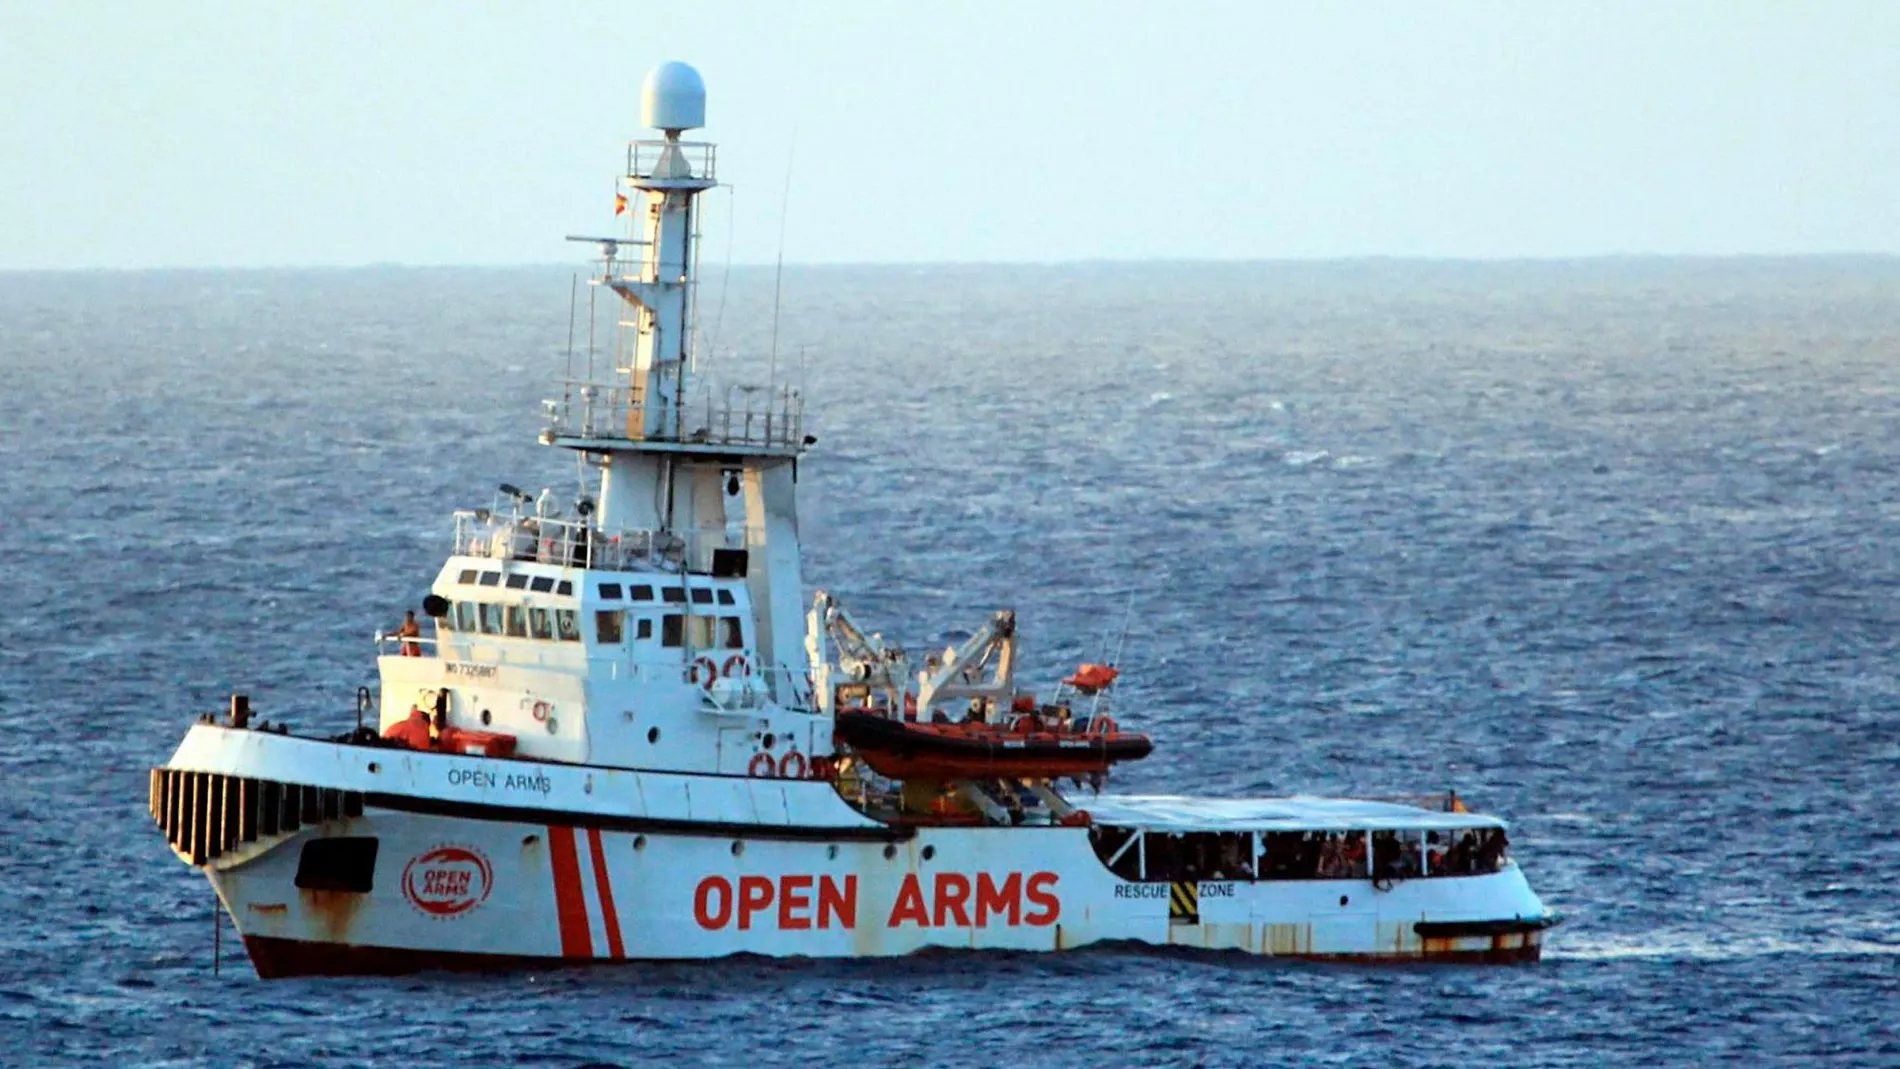 Imagen del Open Arms en la costa de Lampedusa